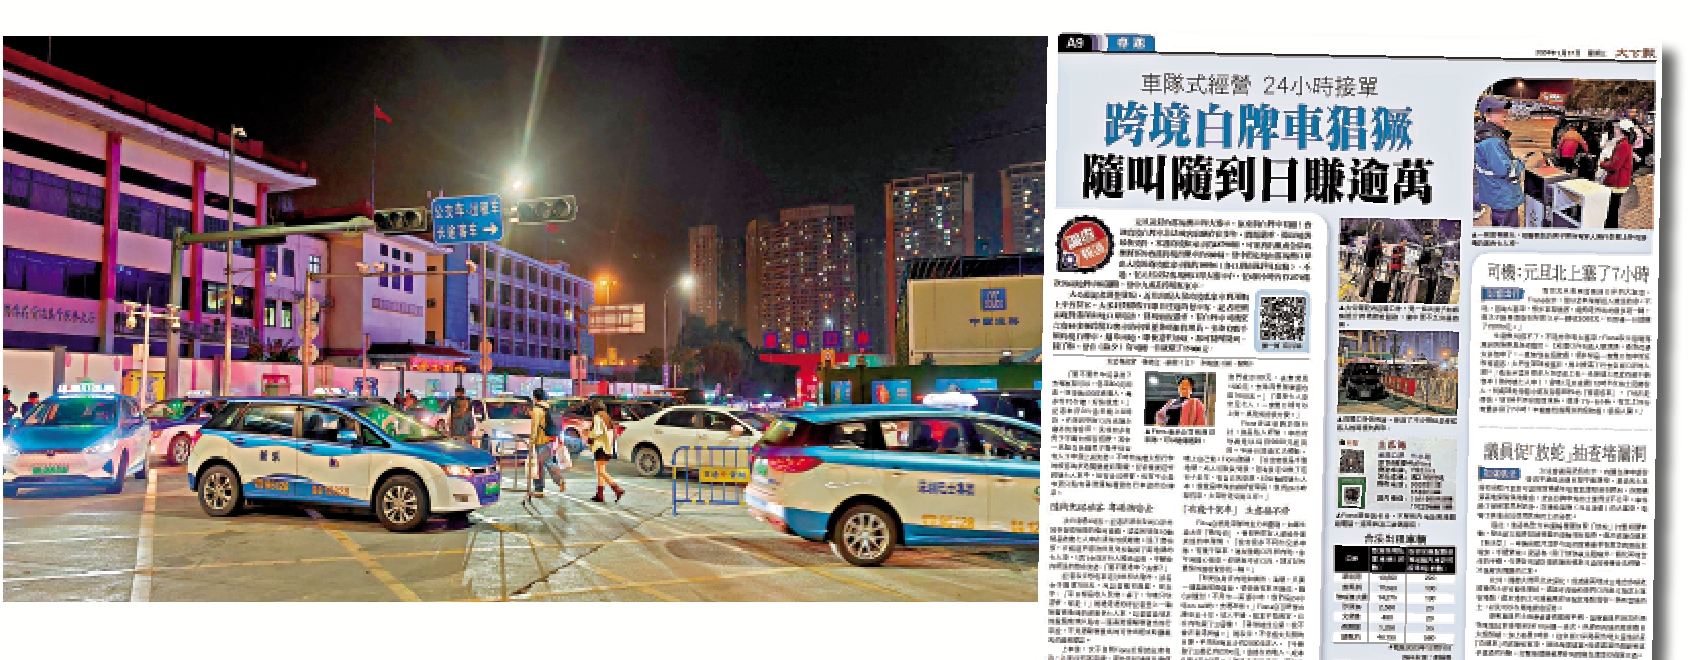 　　左圖：今年元旦凌晨有大批內地旅客滯留香港，懷疑是因大量白牌車在皇崗口岸過關阻塞交通，導致跨境巴士未能及時回轉。右圖：《大公報》跟進跨境白牌車的報道，引起廣泛關注。